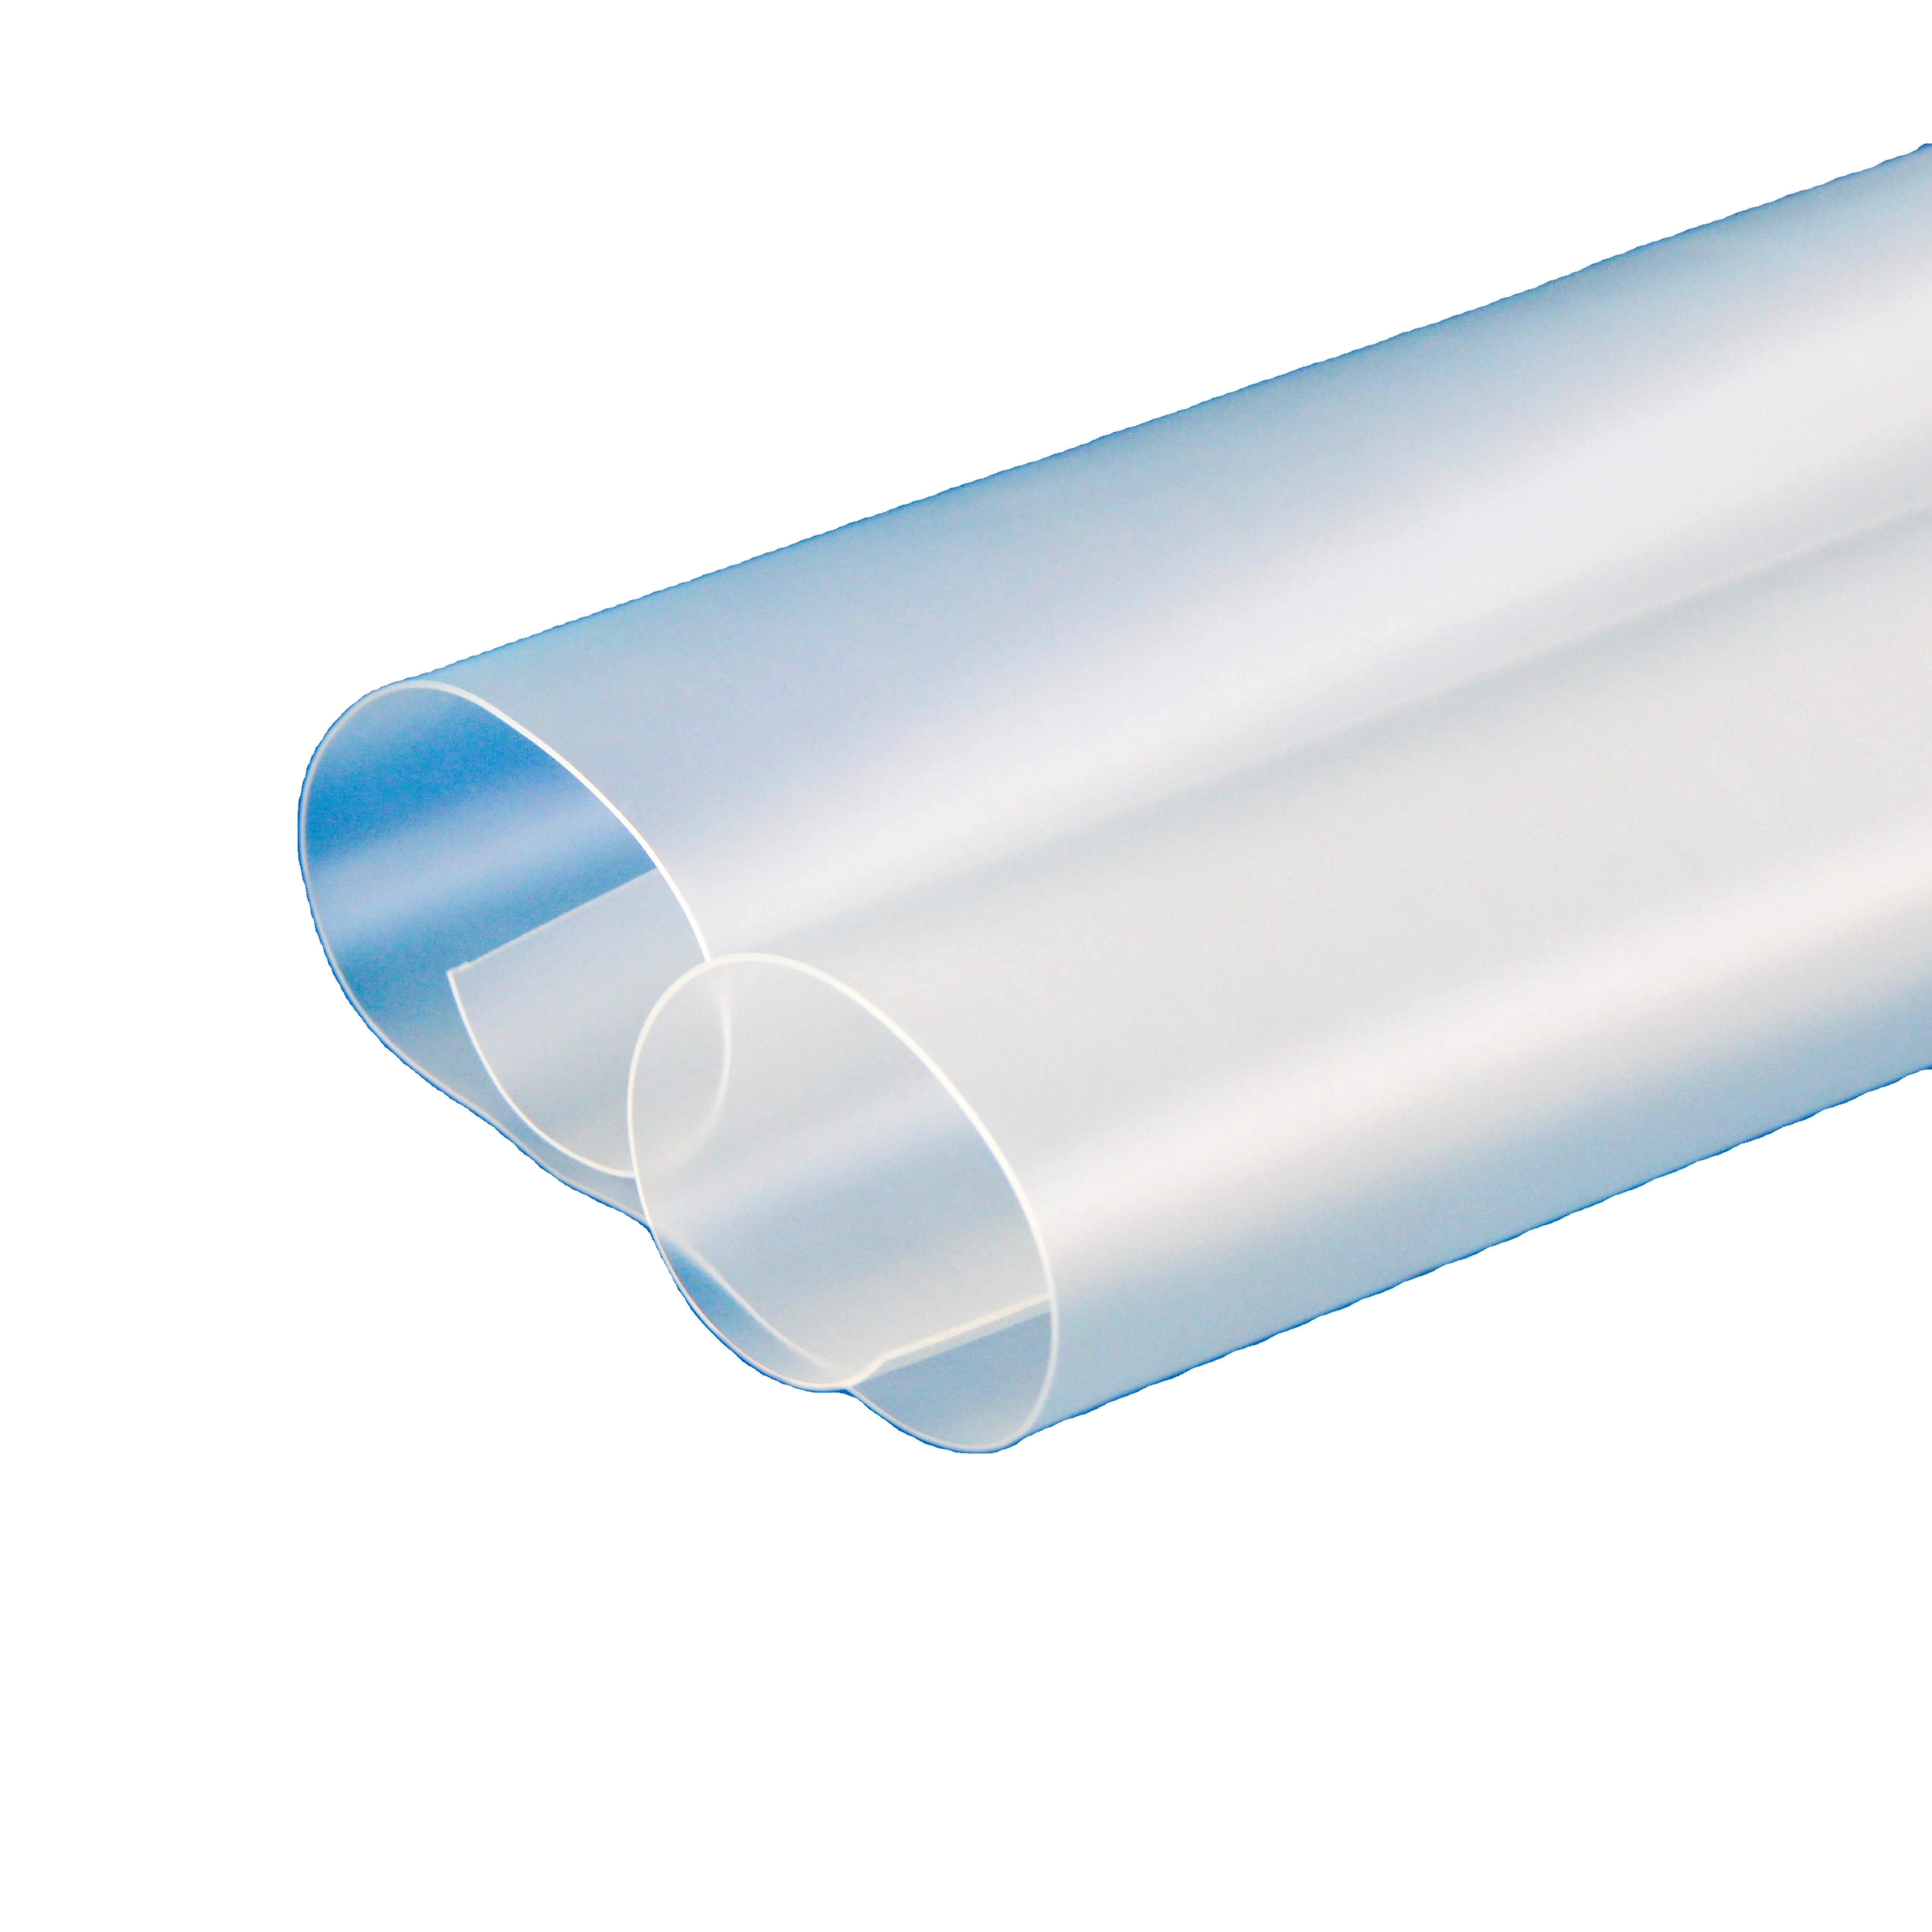 Sandite Fabriekslevering Voor De Voorruit Kogelwerend Glas Op Urethaan Gebaseerde Elastomeren Thermoplastische Polyurethaan Tpu-Filmplaat